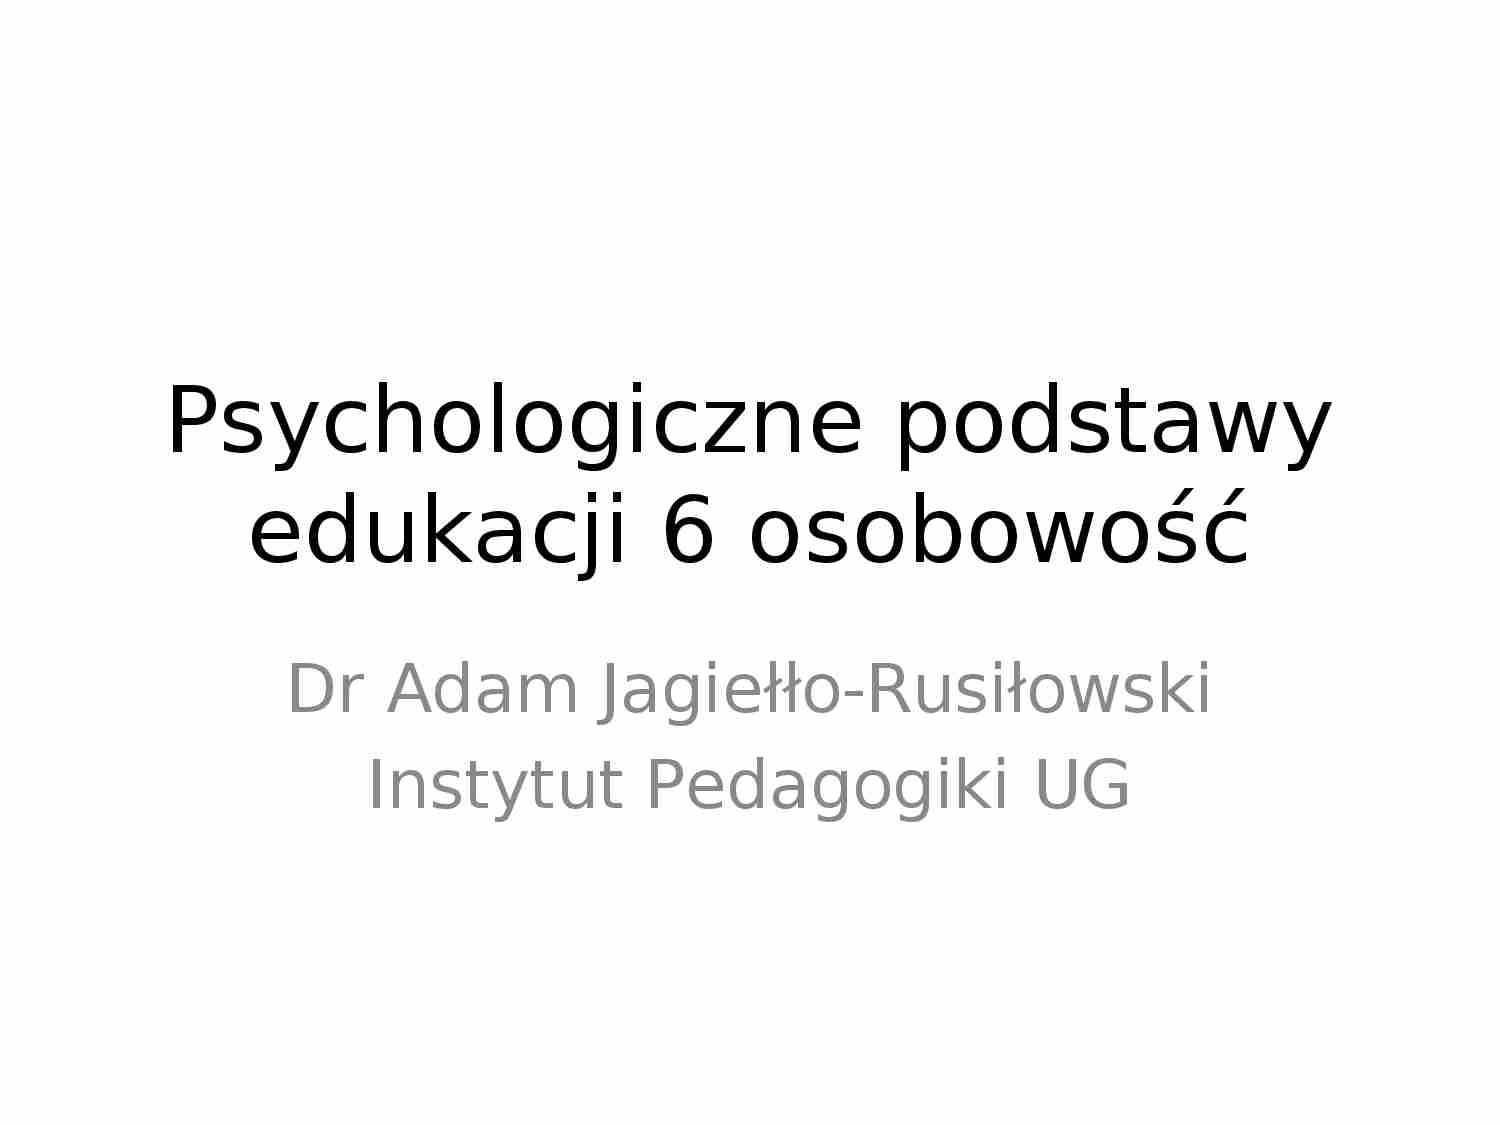 Psychologiczne podstawy edukacji - osobowość - prezentacja. - strona 1